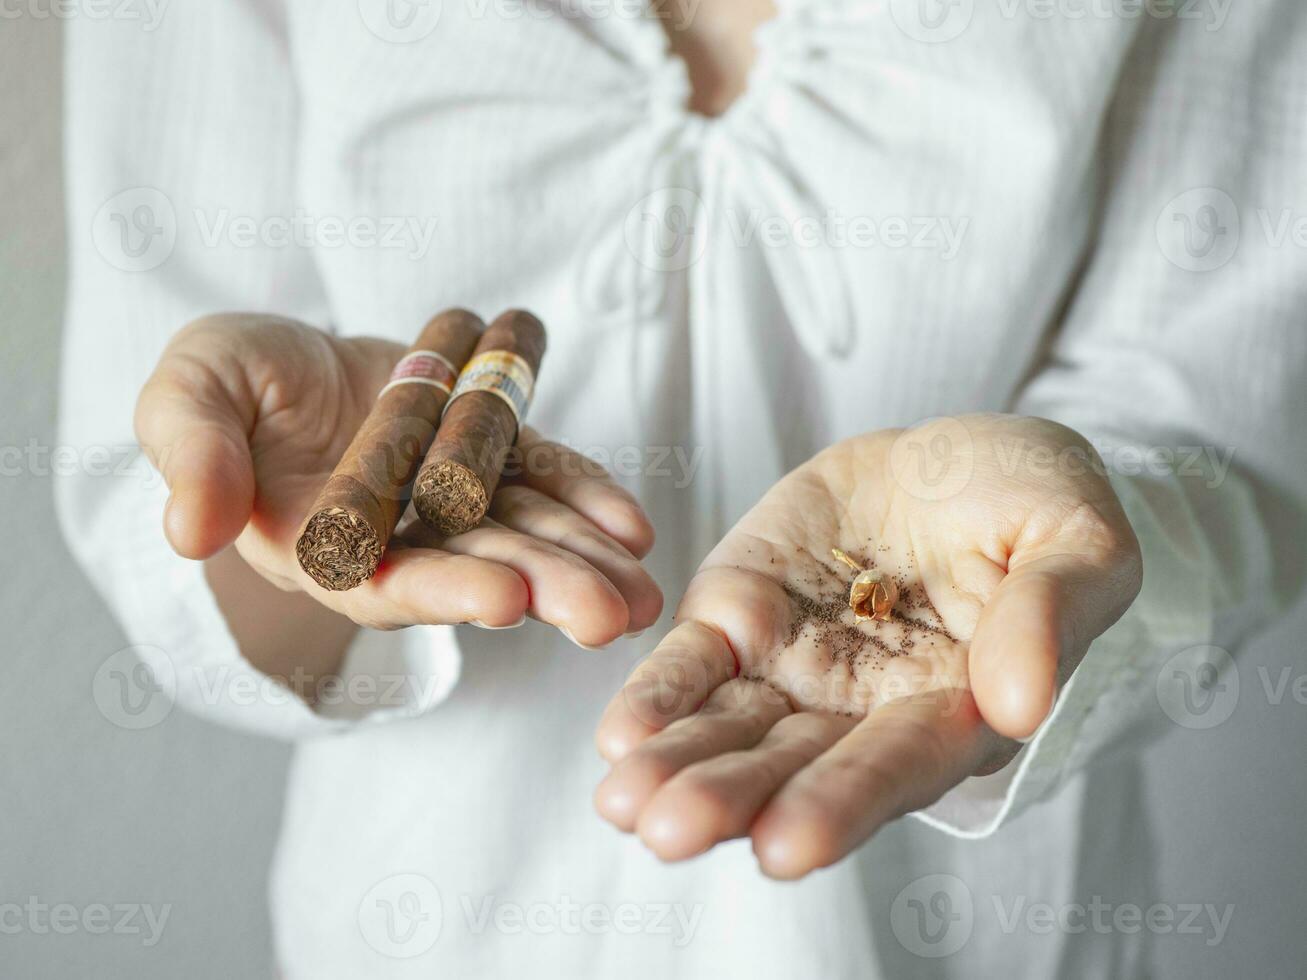 tobak frön och en cigarr i de handflatan av din hand. ytterligheter kreativ begrepp. foto